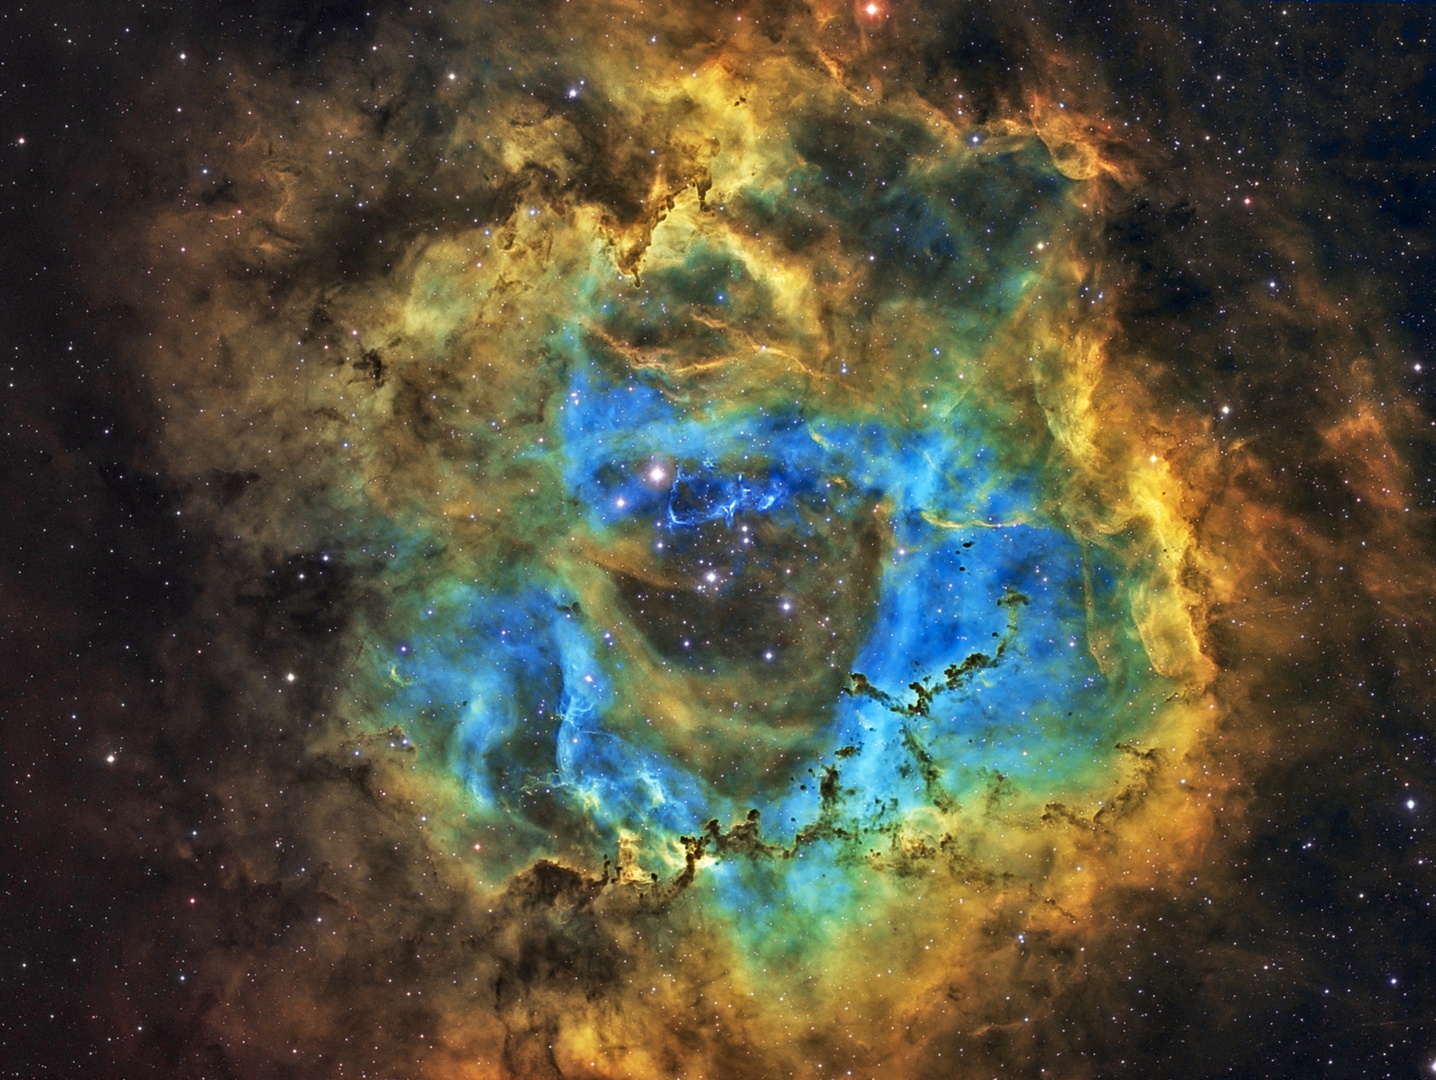 Rosettennebel NGC2244